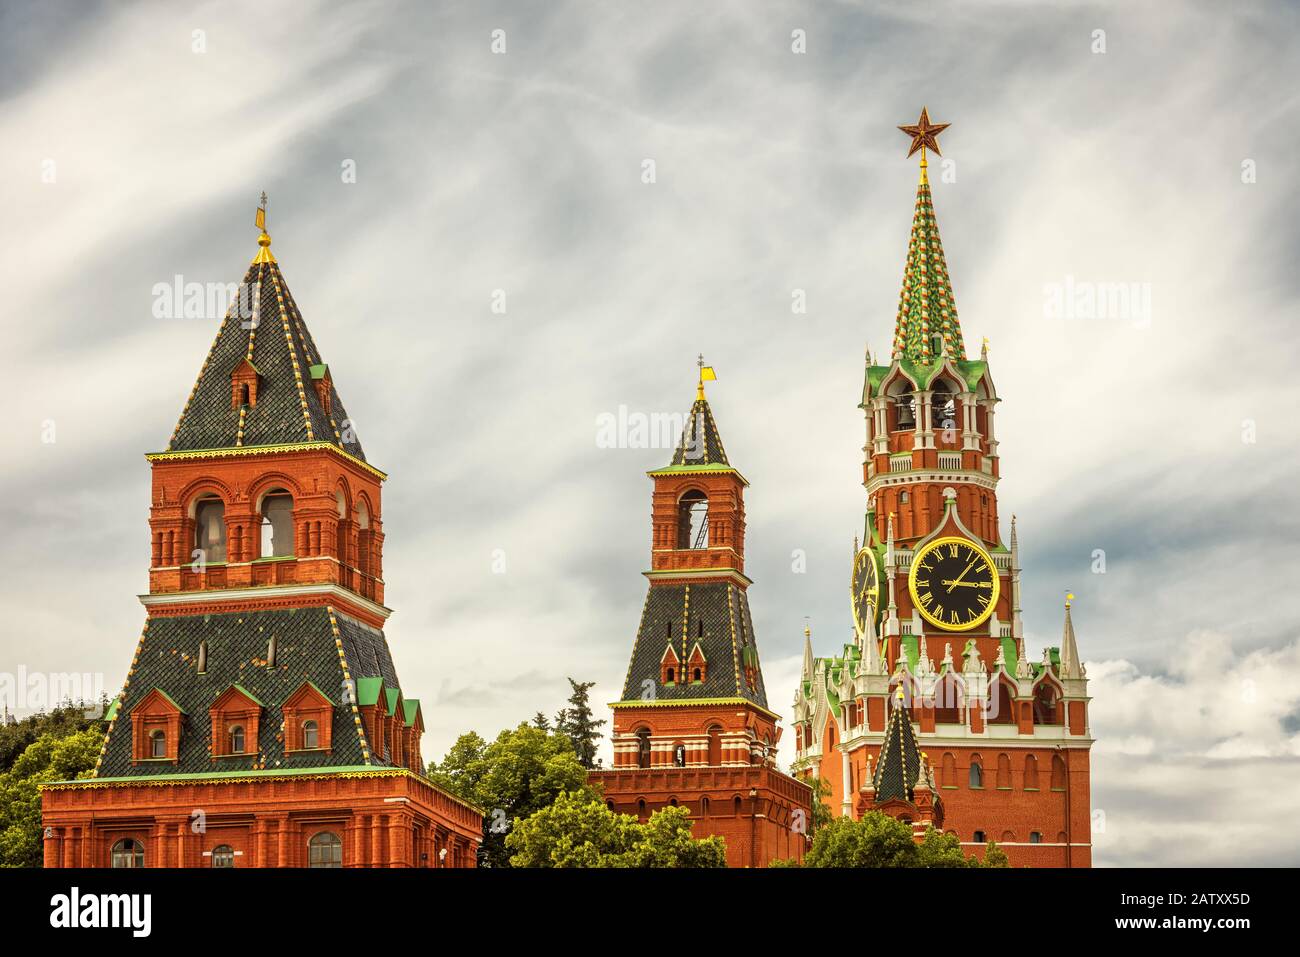 Der Moskauer Kreml auf dem Roten Platz, Russland. Der Moskauer Kreml ist die Residenz des russischen präsidenten und die wichtigste Touristenattraktion Moskaus. Stockfoto